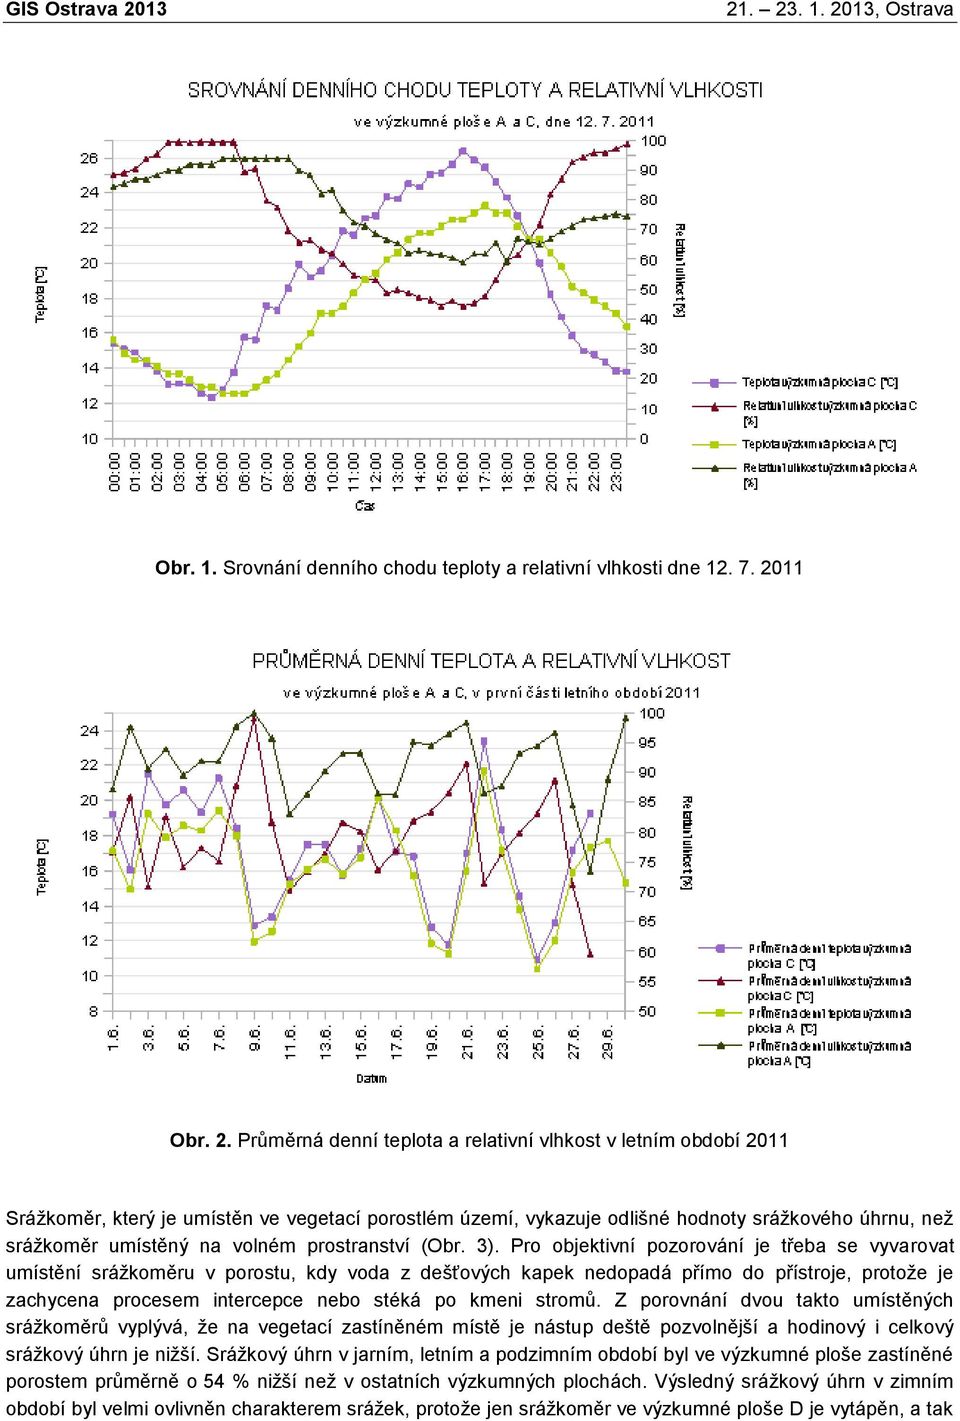 Průměrná denní teplota a relativní vlhkost v letním období 2011 Srážkoměr, který je umístěn ve vegetací porostlém území, vykazuje odlišné hodnoty srážkového úhrnu, než srážkoměr umístěný na volném